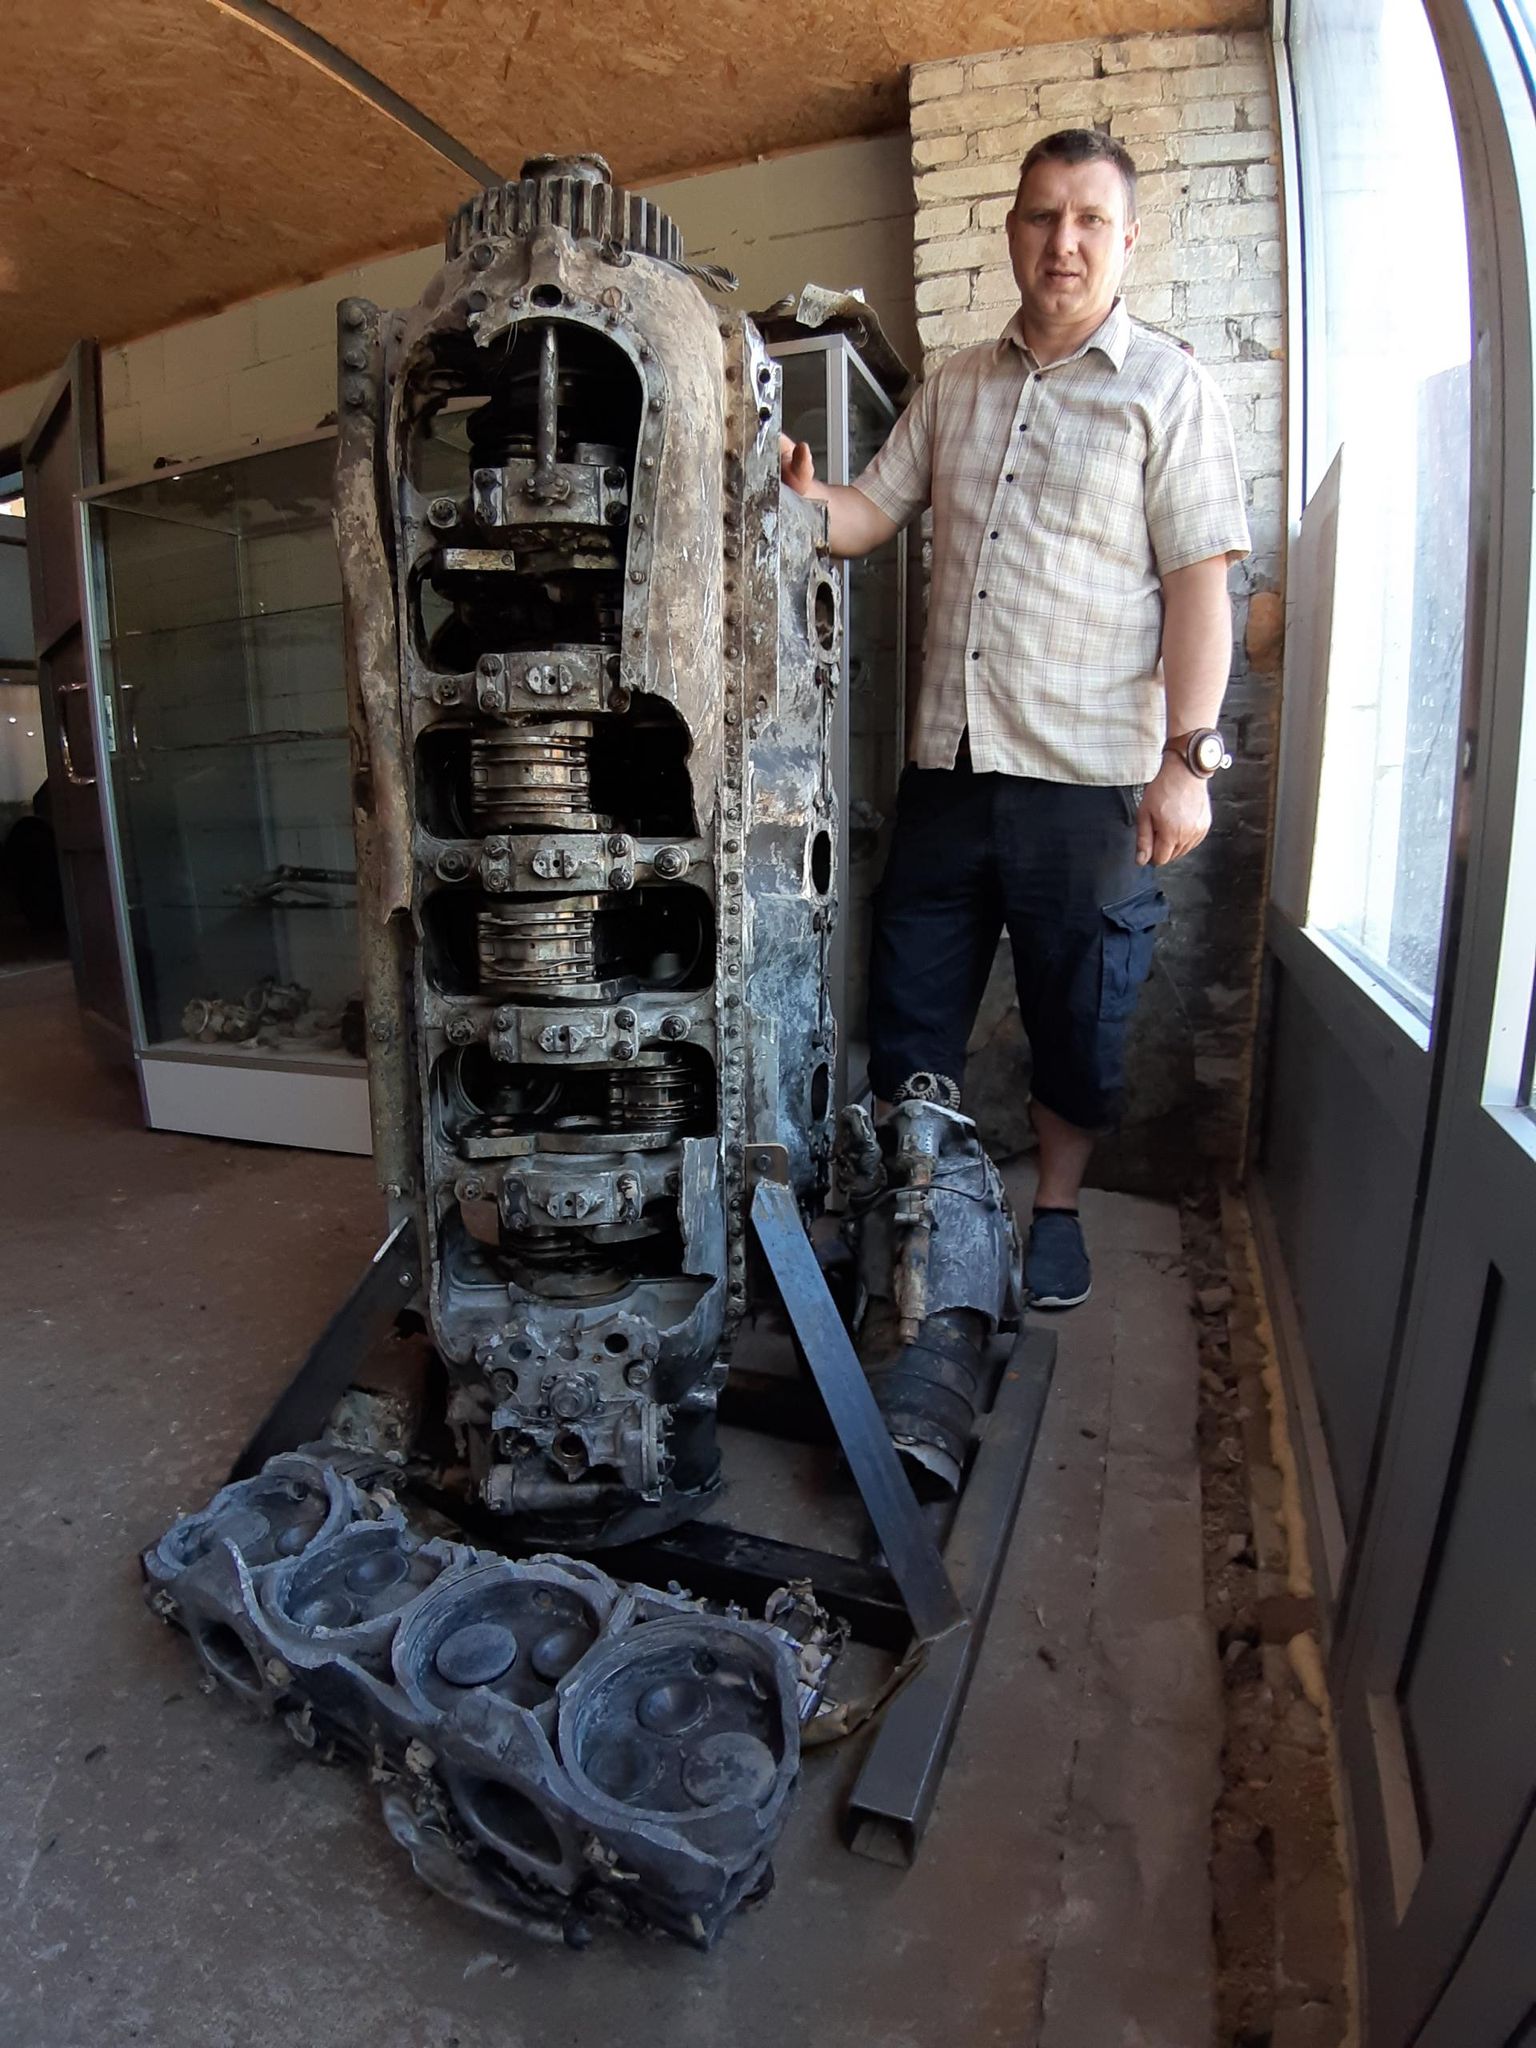 Двигатель найденного истребителя Як-9 такой же высоты, что и руководитель военного музея в Йыгева Сергей Еремин.